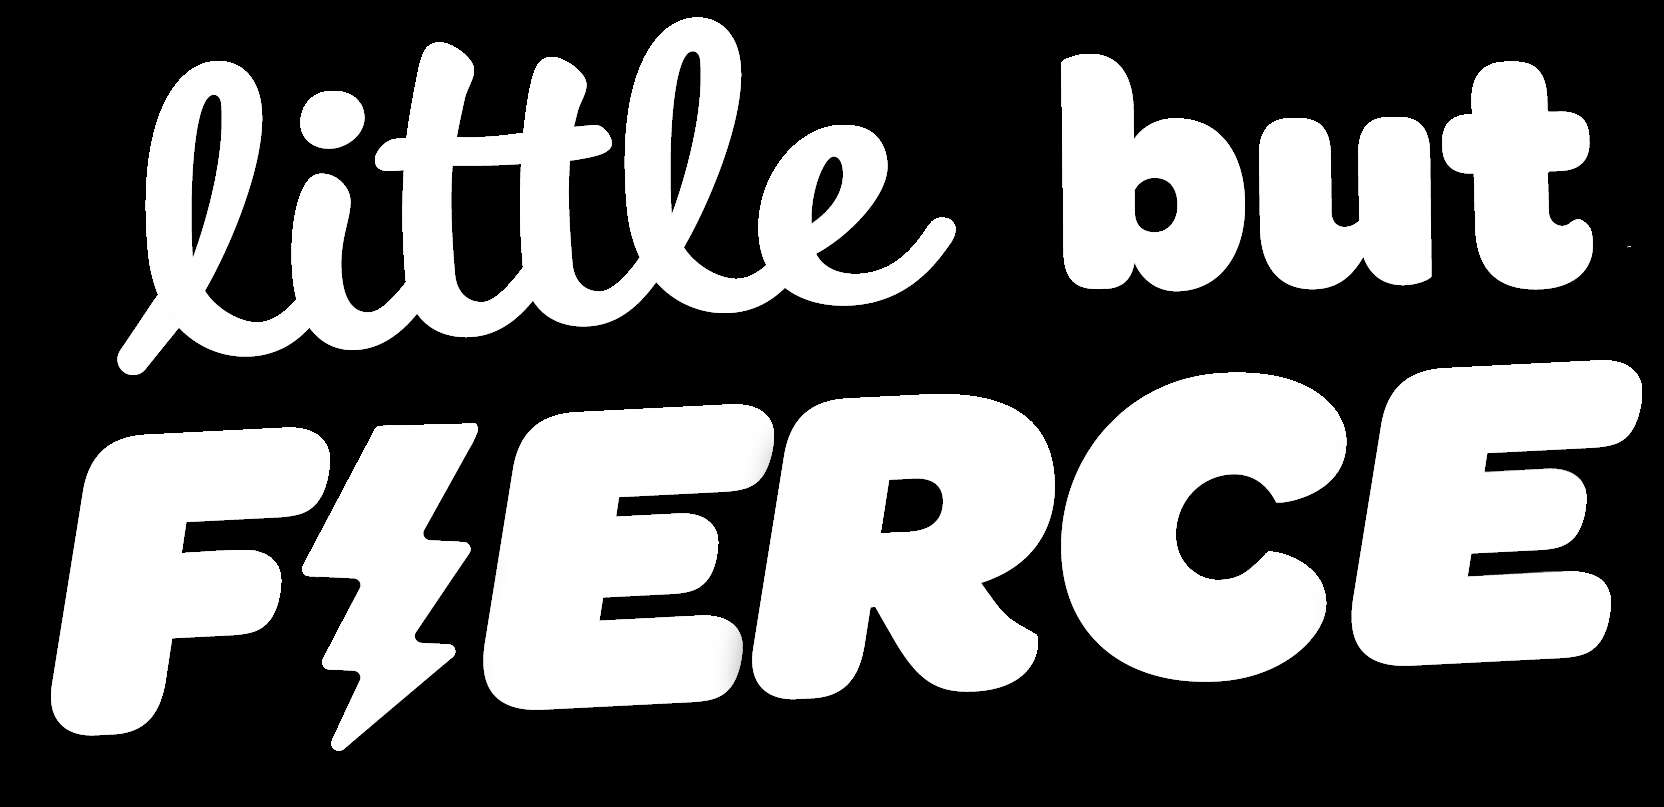 Little But Fierce logo